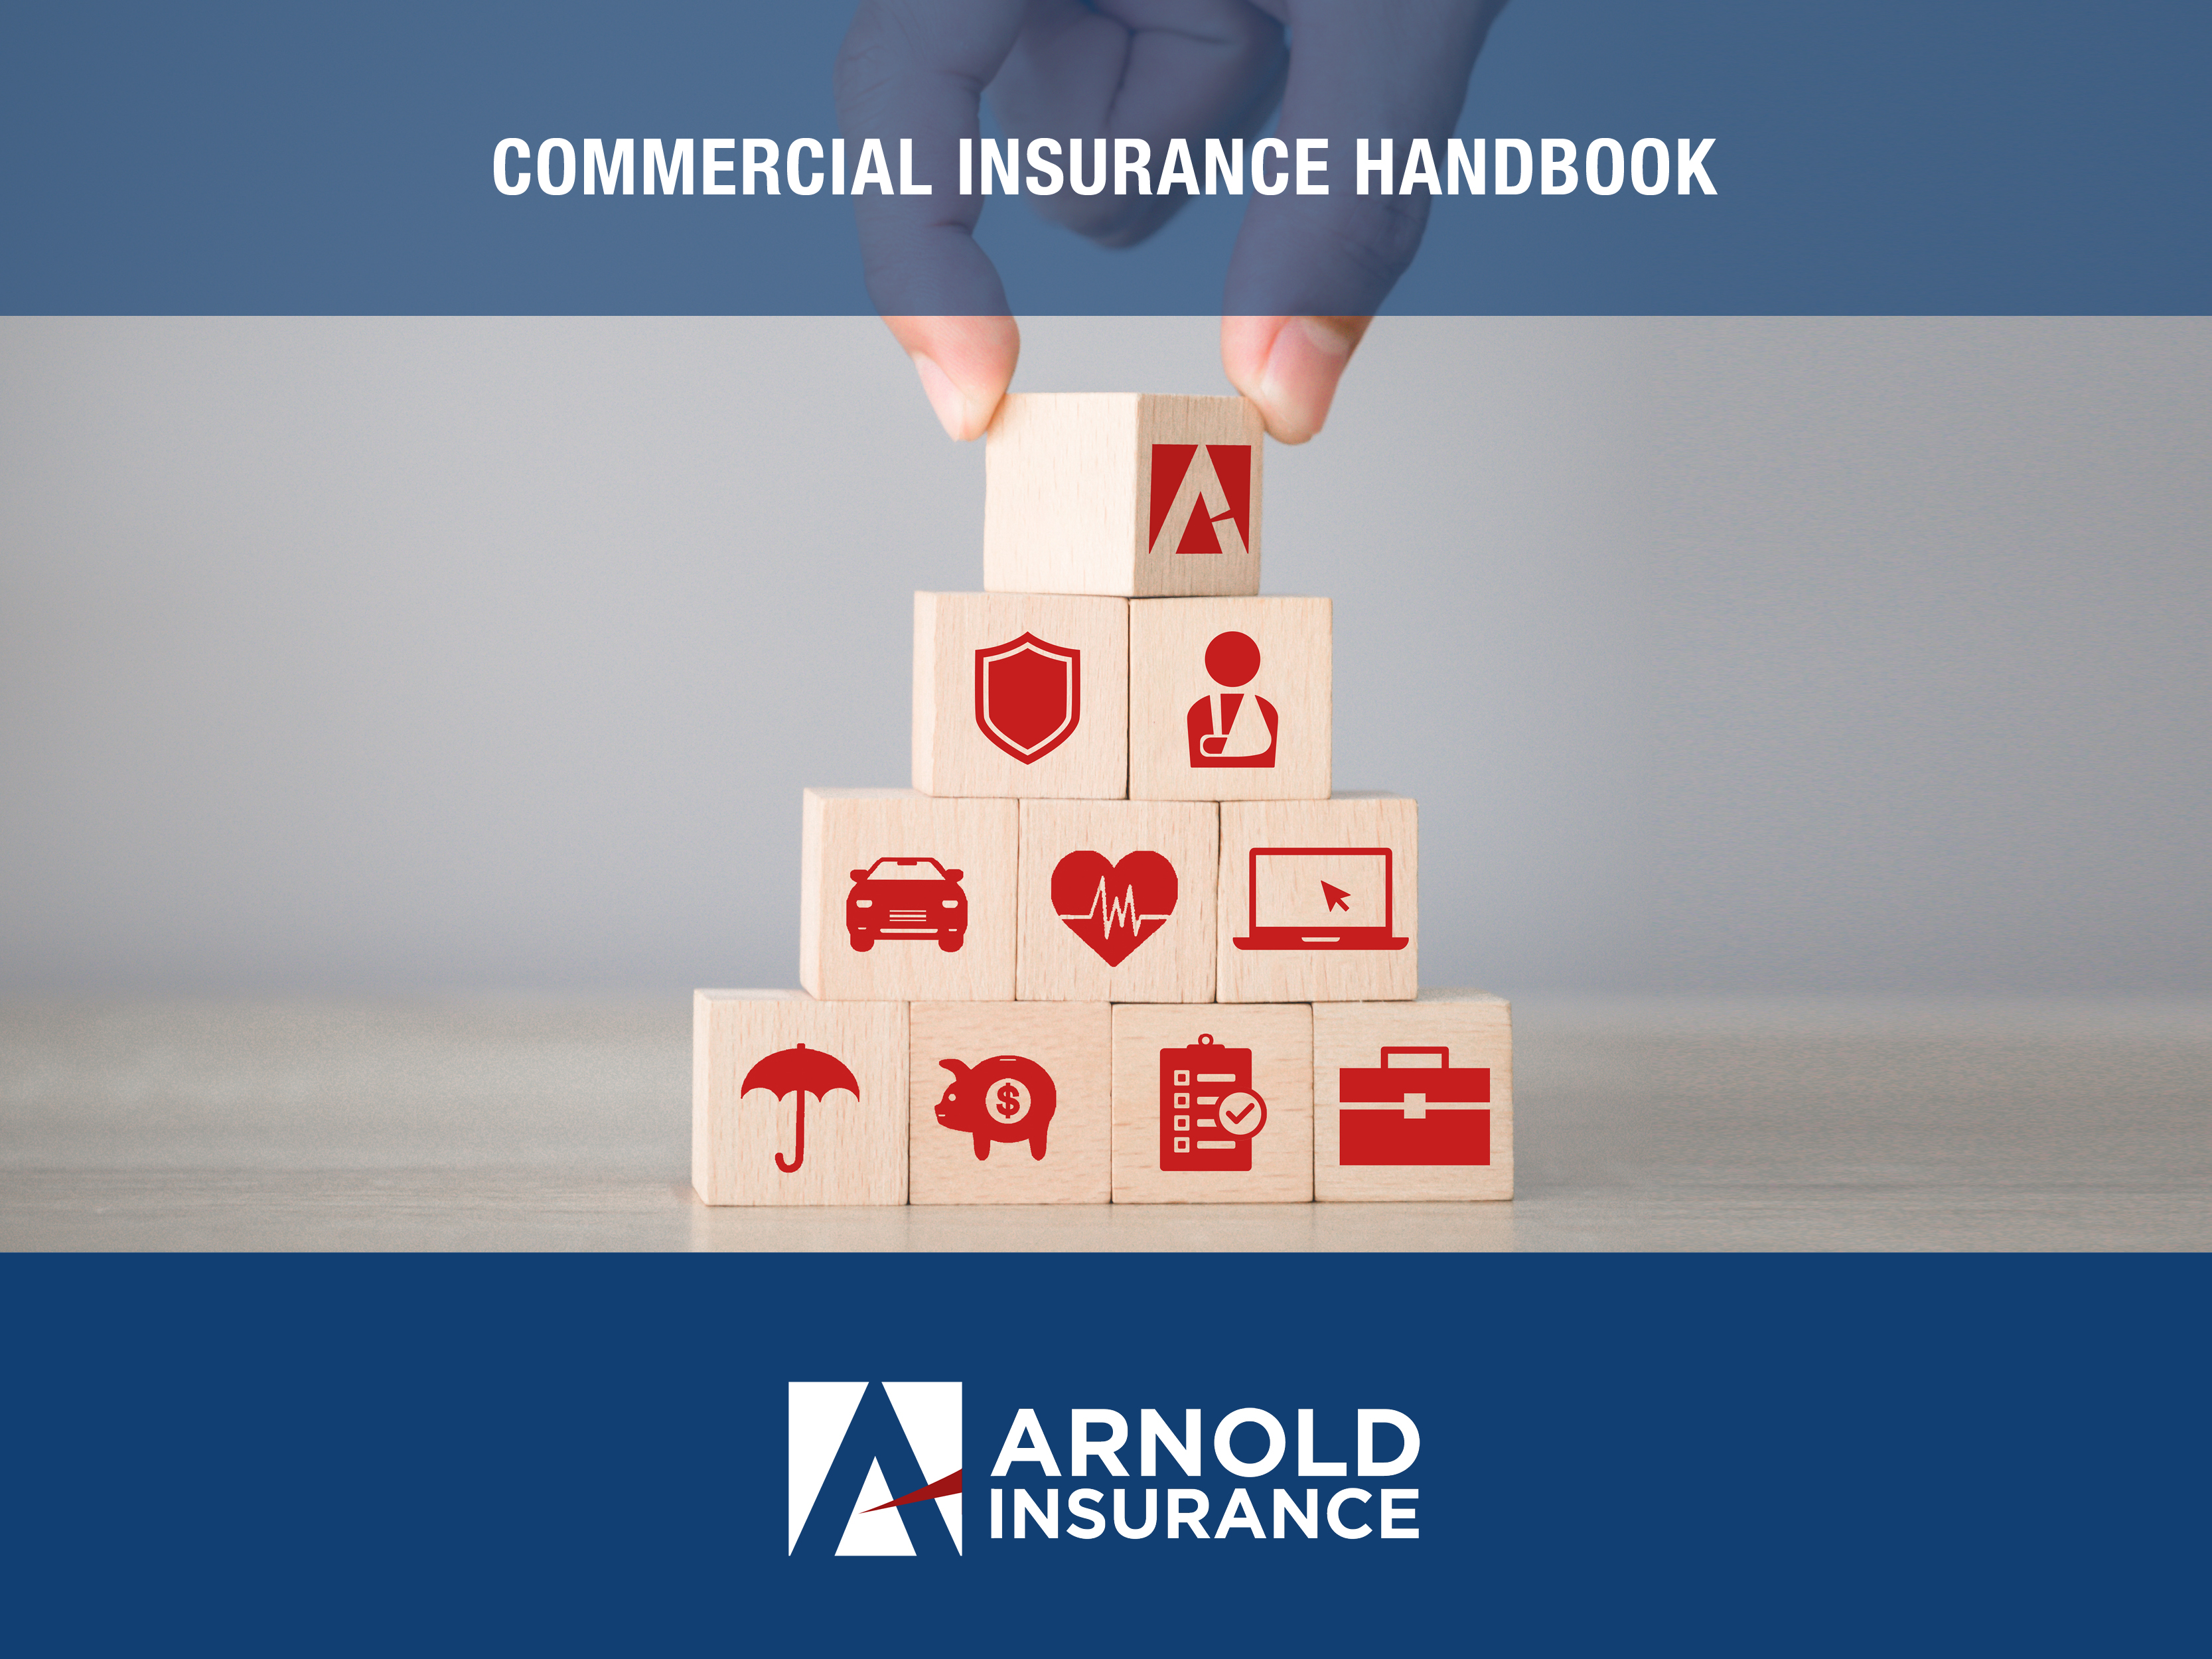 ArnoldInsurance_CommercialInsuranceHandbook(2)